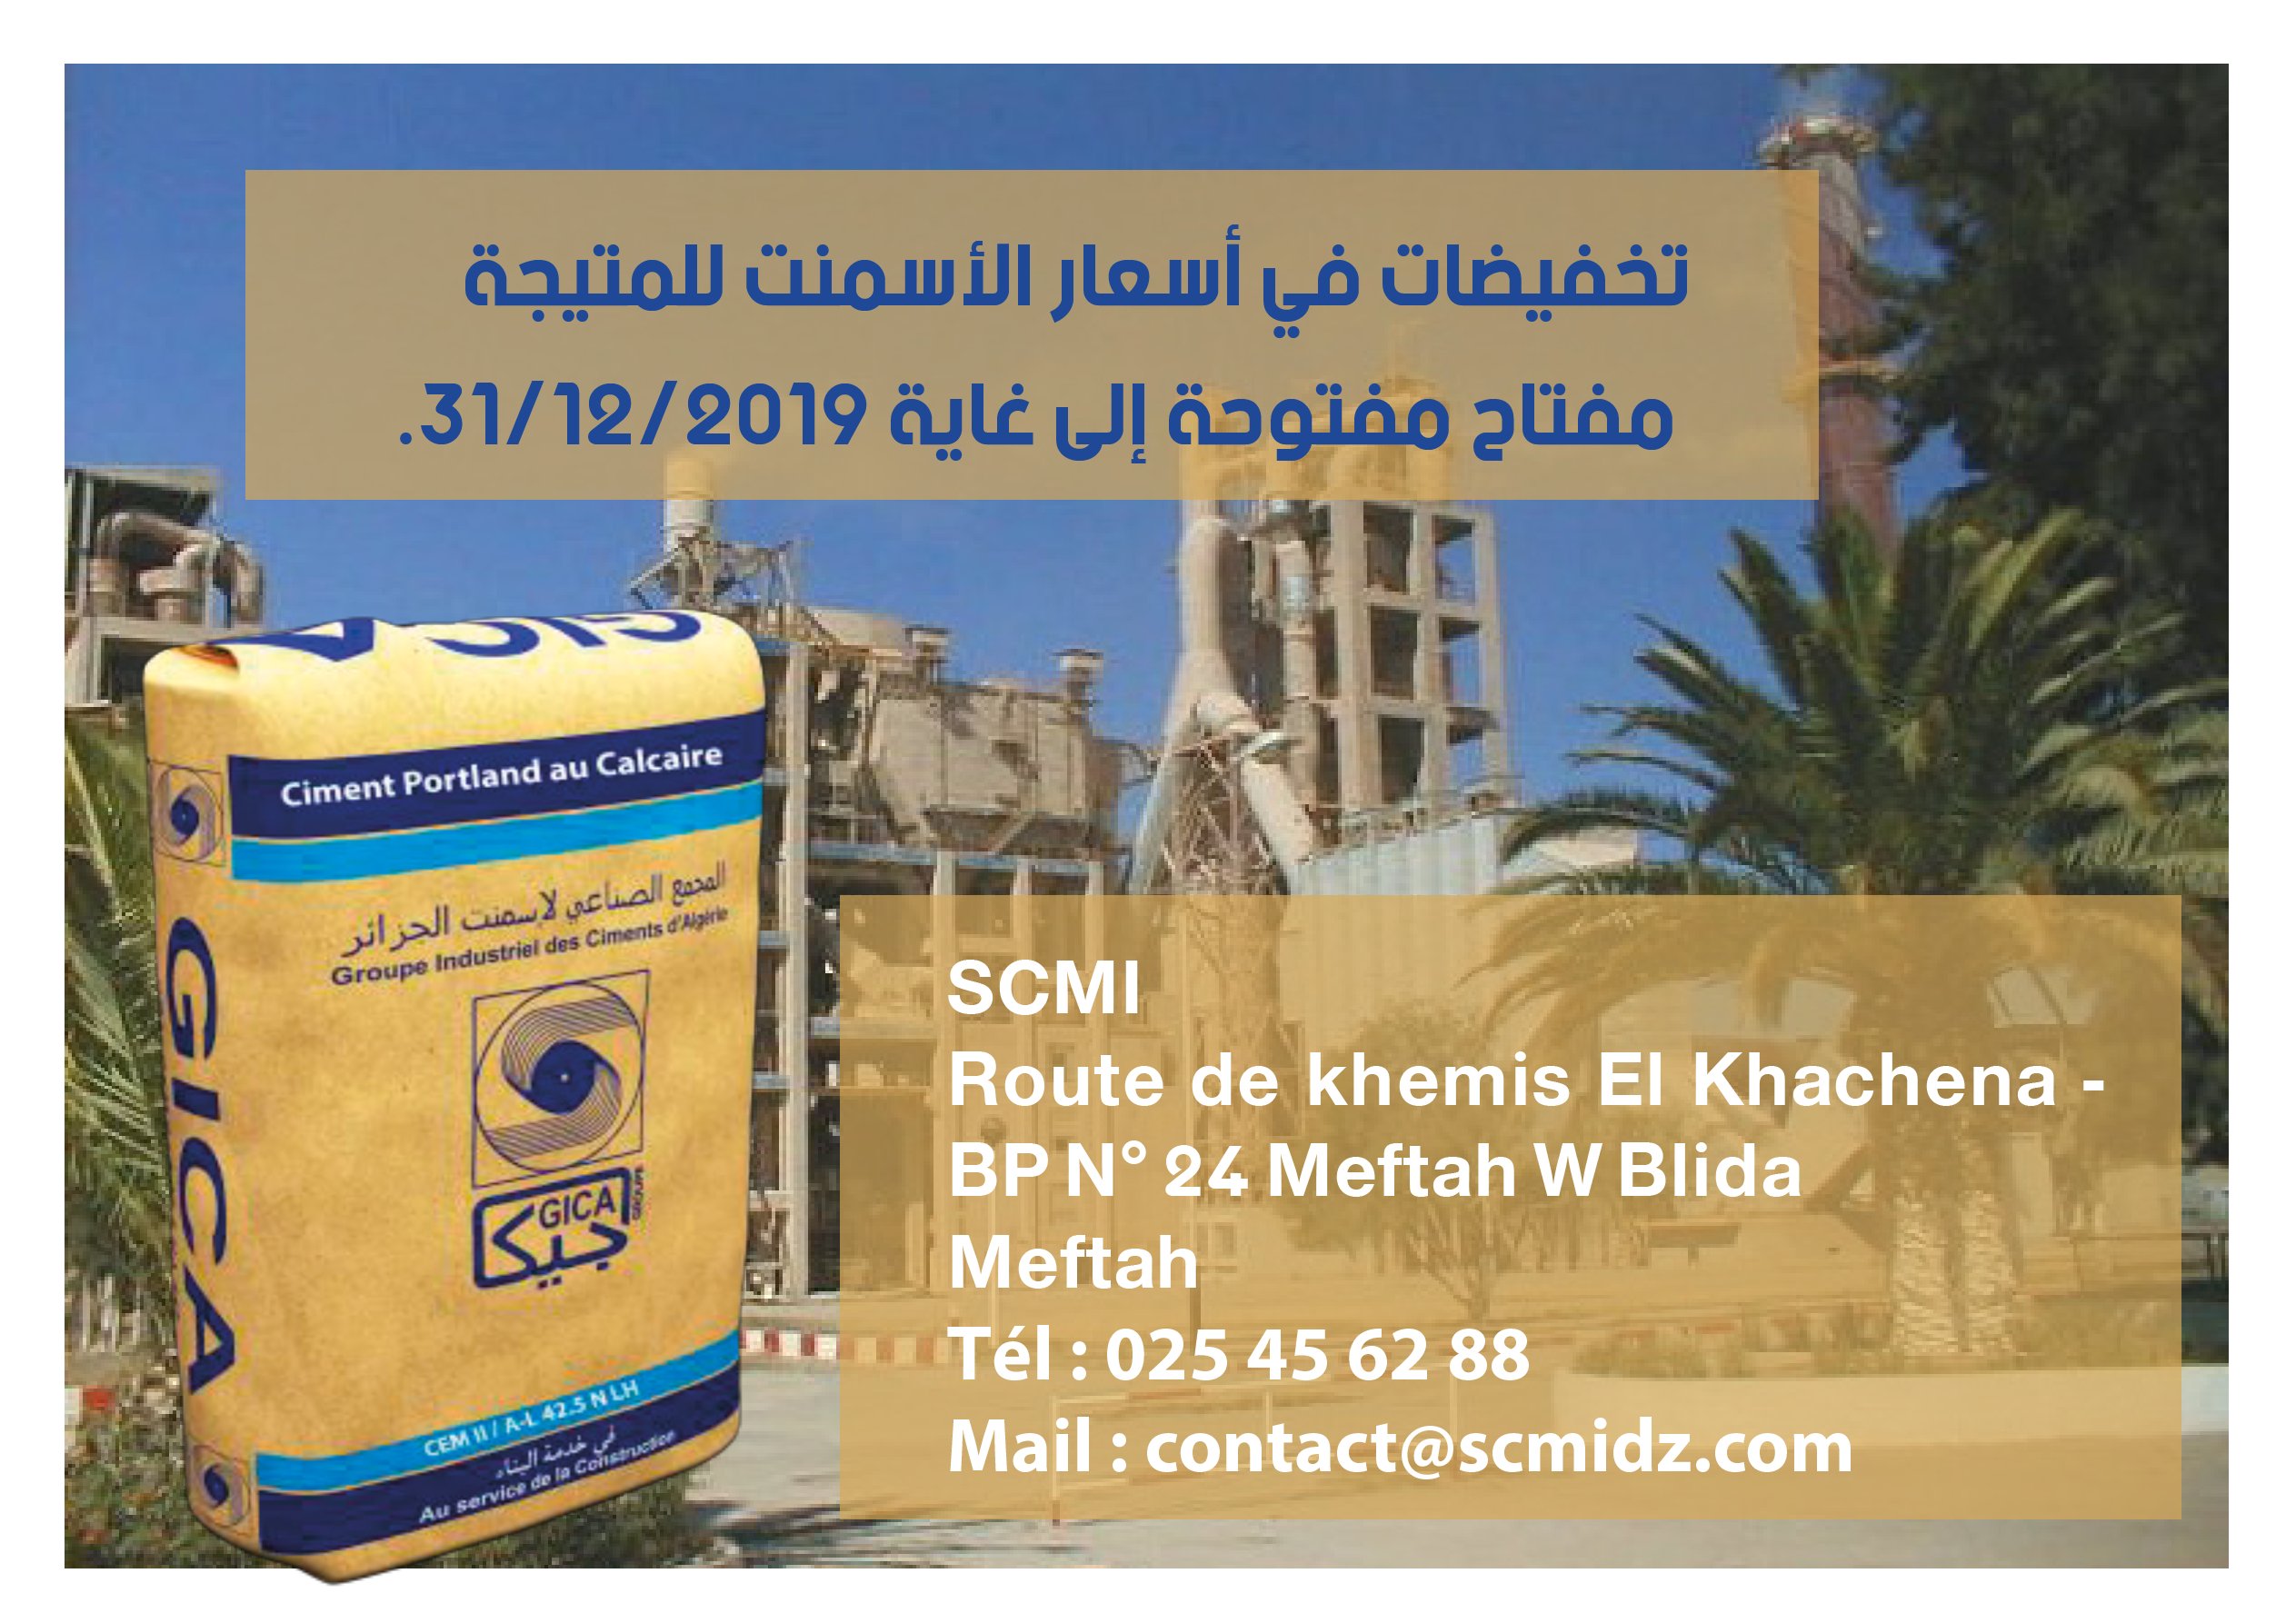 Ciment Portland GICA - Groupe Industriel des Ciments d'Algérie